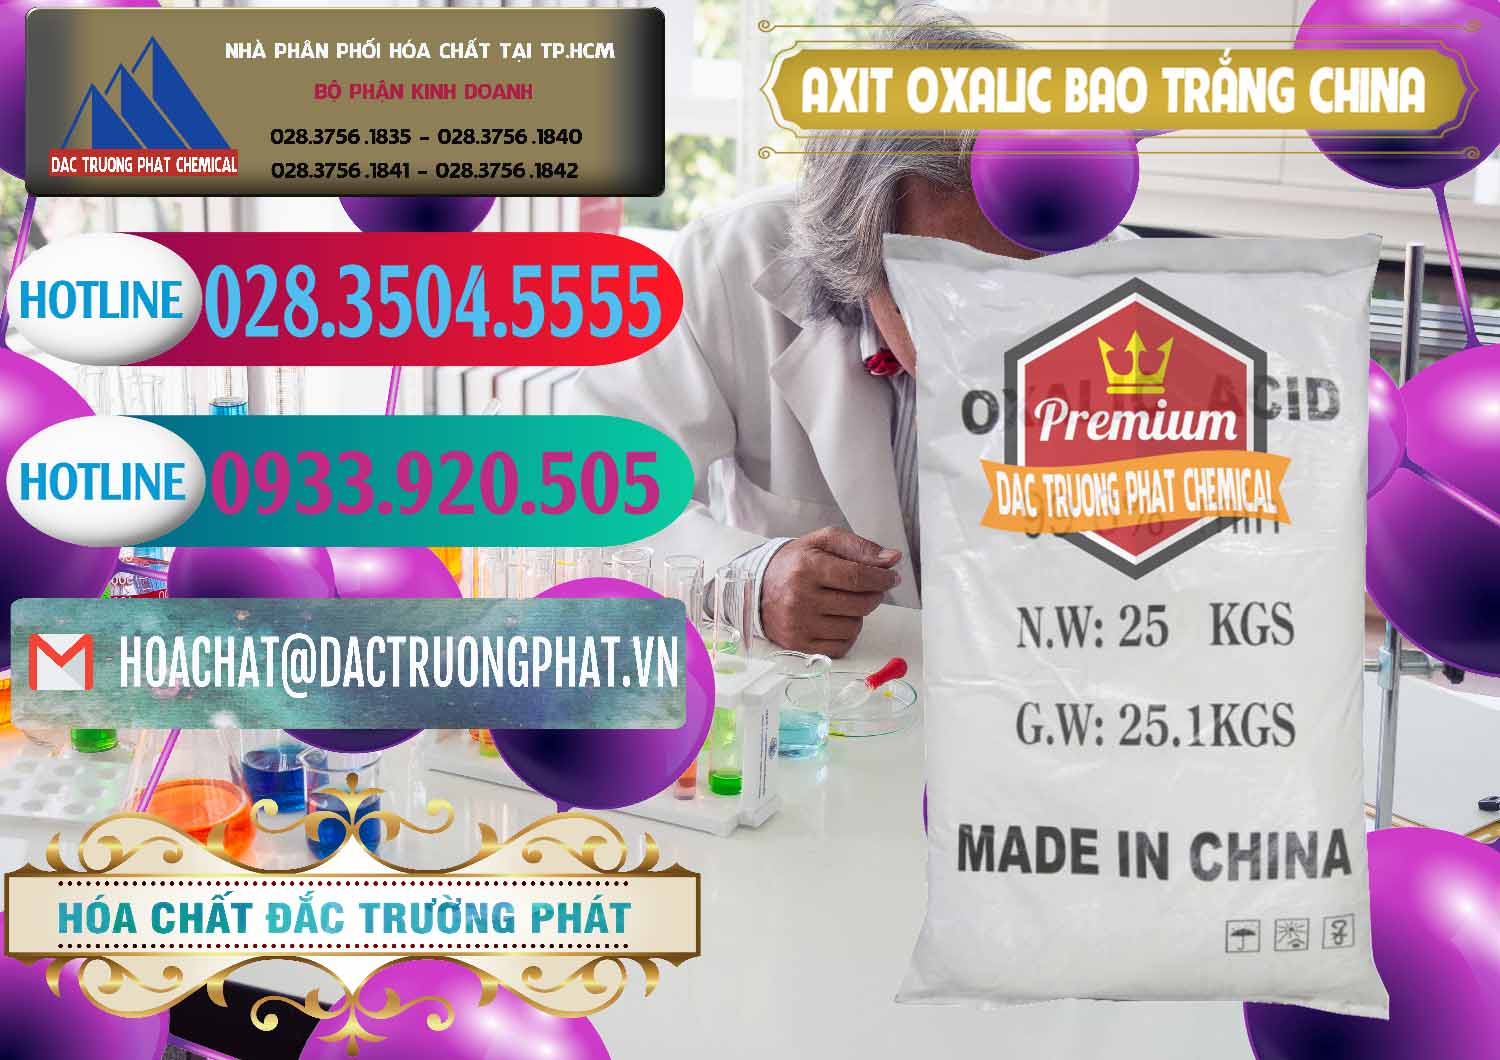 Công ty chuyên bán & cung cấp Acid Oxalic – Axit Oxalic 99.6% Bao Trắng Trung Quốc China - 0270 - Nhà phân phối _ cung cấp hóa chất tại TP.HCM - truongphat.vn